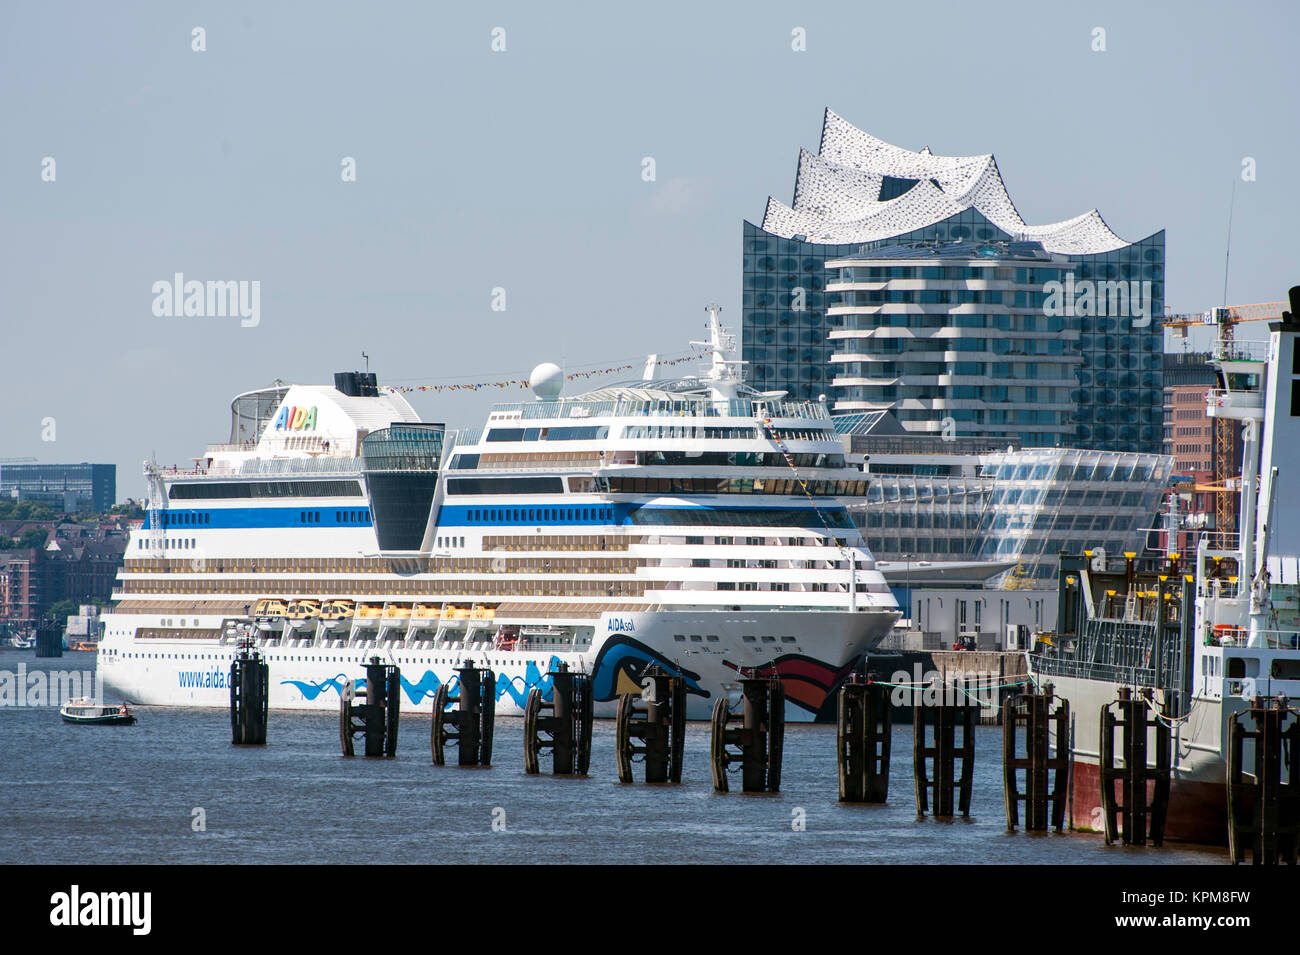 Hamburg, eine der schönsten und beliebtesten Reiseziele der Welt. Cruiseship AIDAsol und er neuen Elbphilharmonie Music Hall. Stockfoto